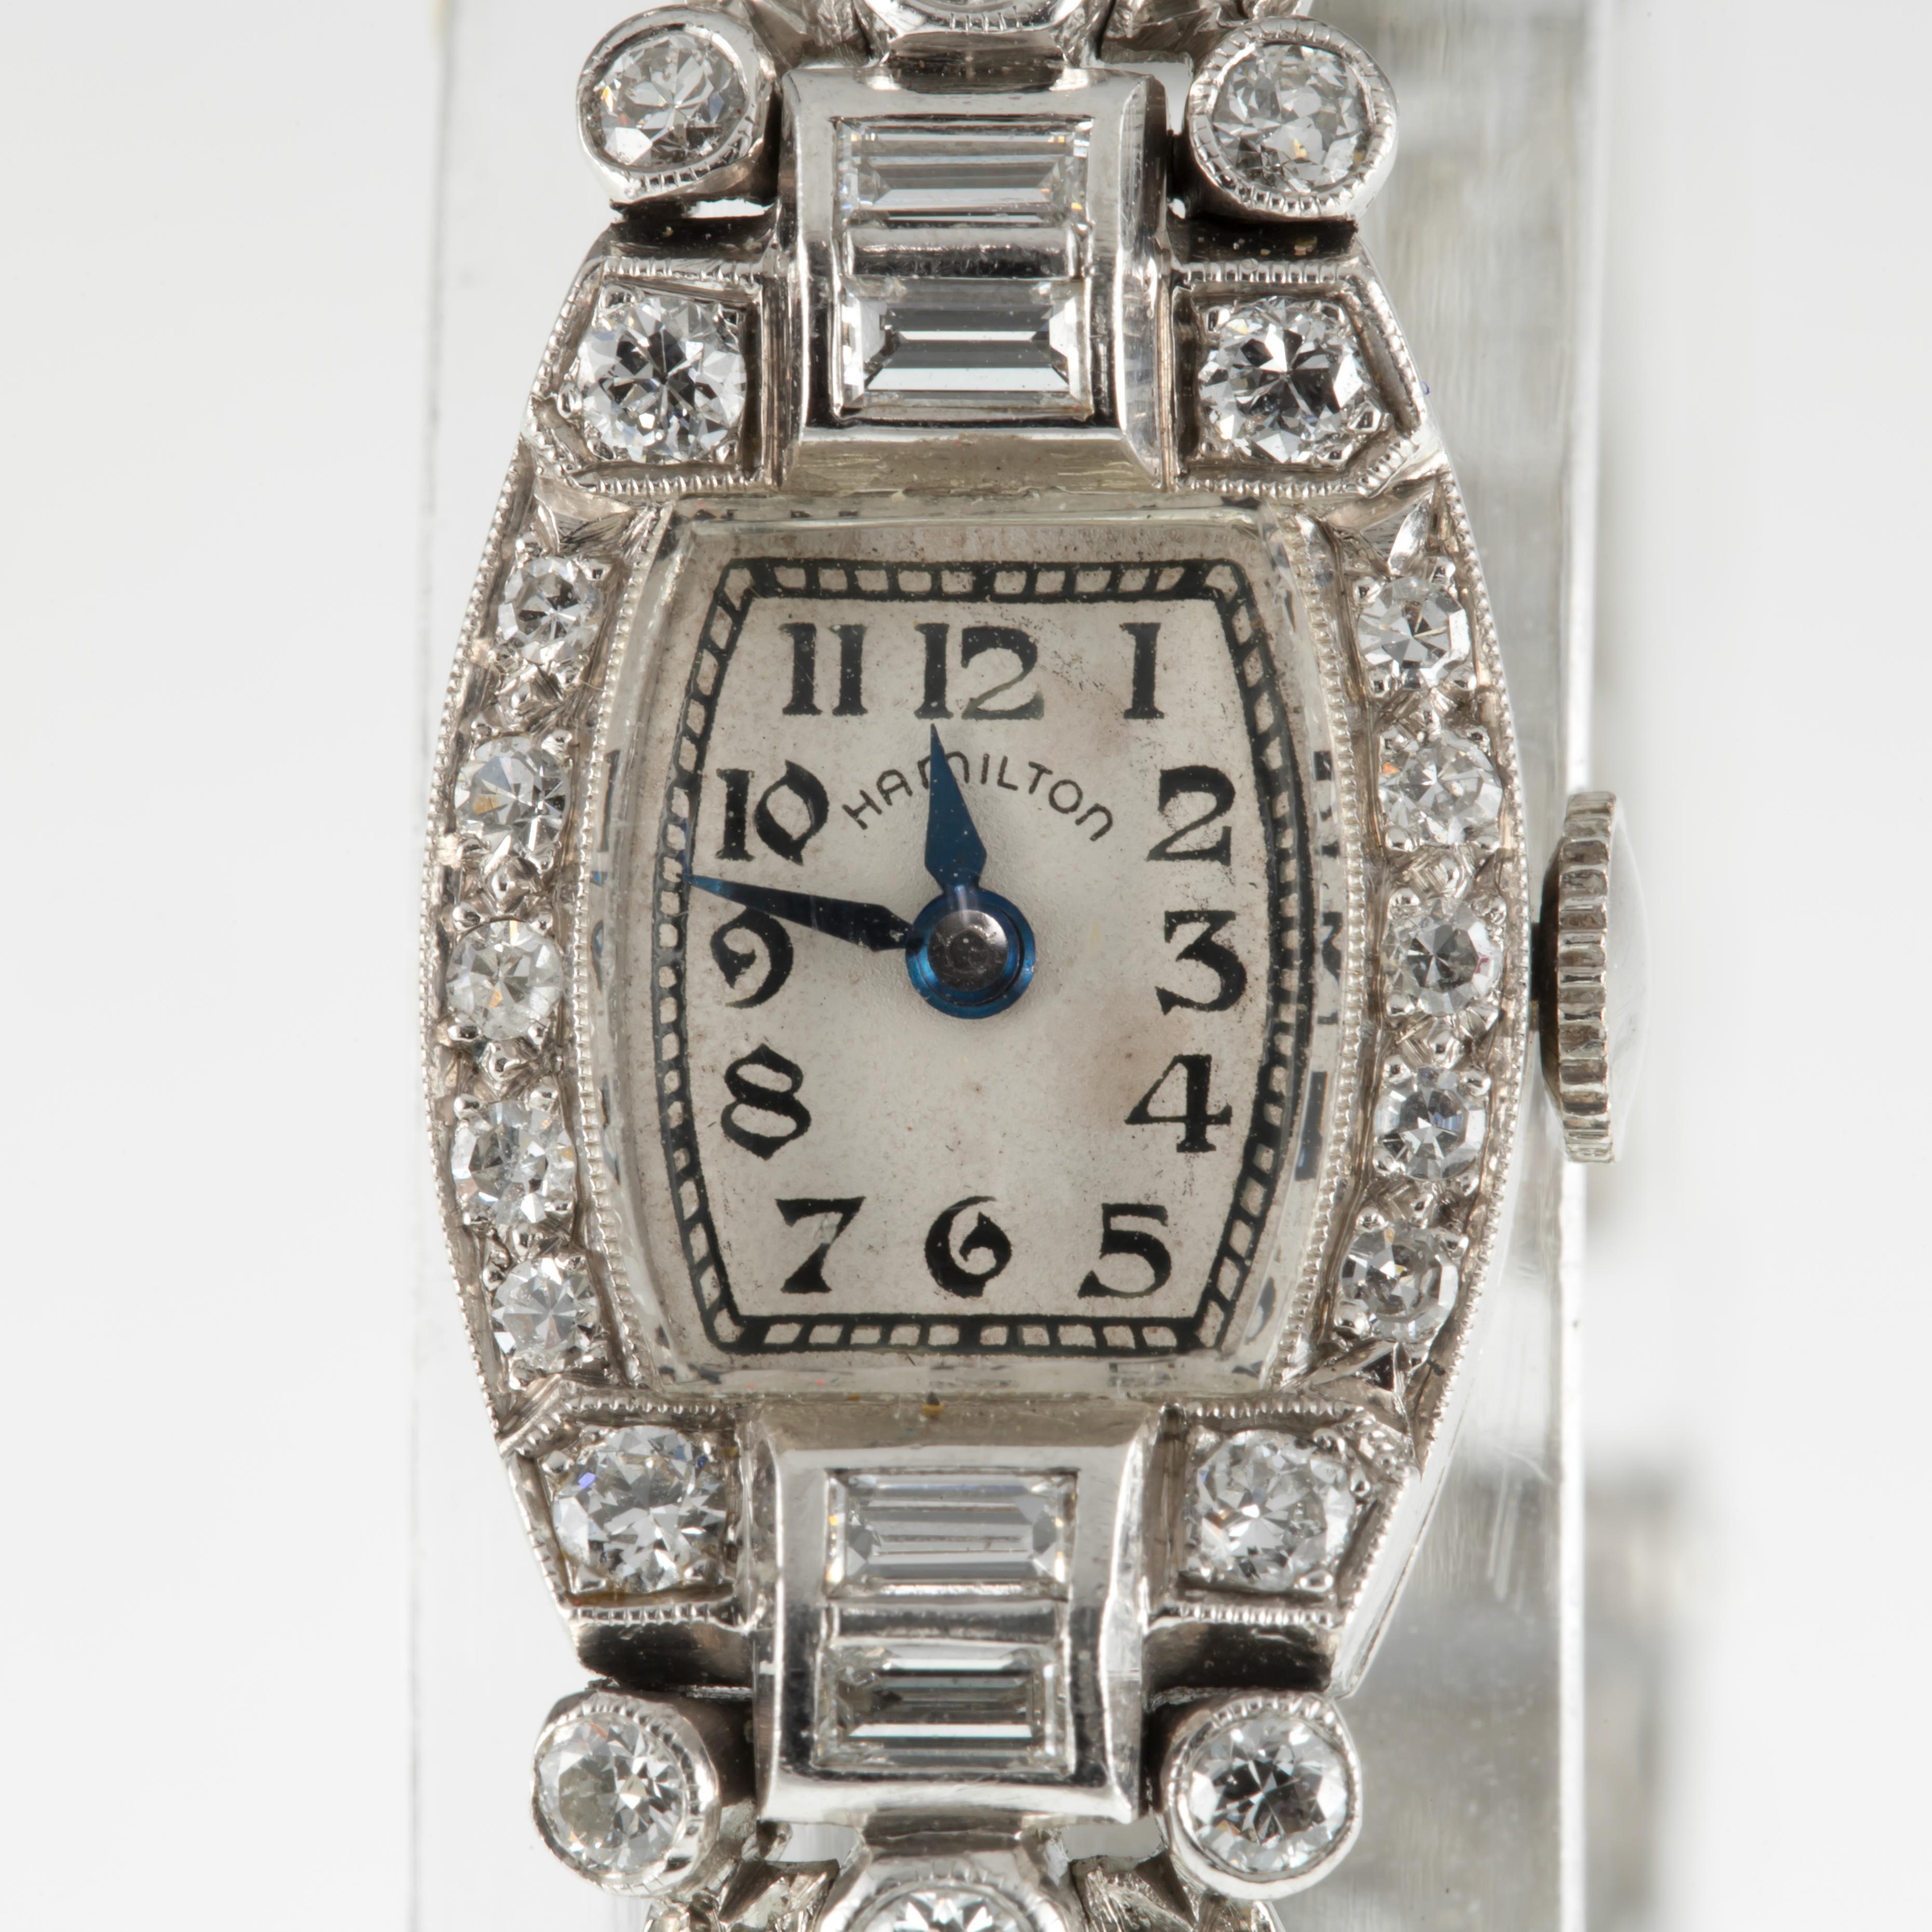 Hamilton Ladies Platinum Diamond Dress Watch Delicate Filigree Mov #911
Mouvement #911
Numéro de série T73771
Année de fabrication : 1939
Coffre-fort platine avec accents en diamant
14 mm de large (15 mm avec couronne)
17 mm de long
Longueur de